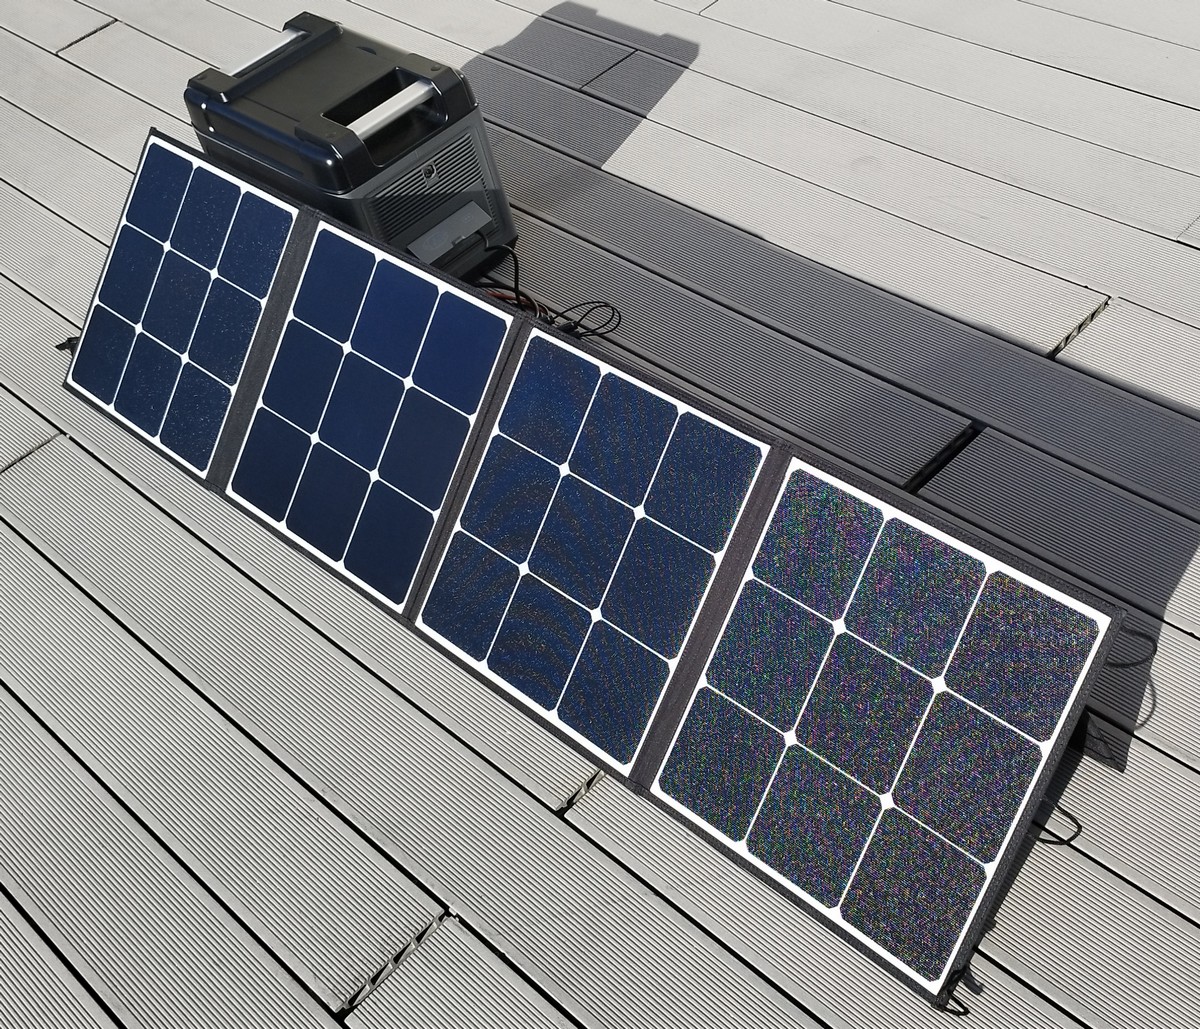 Station solaire Oukitel P2001: vers une autonomie énergétique à